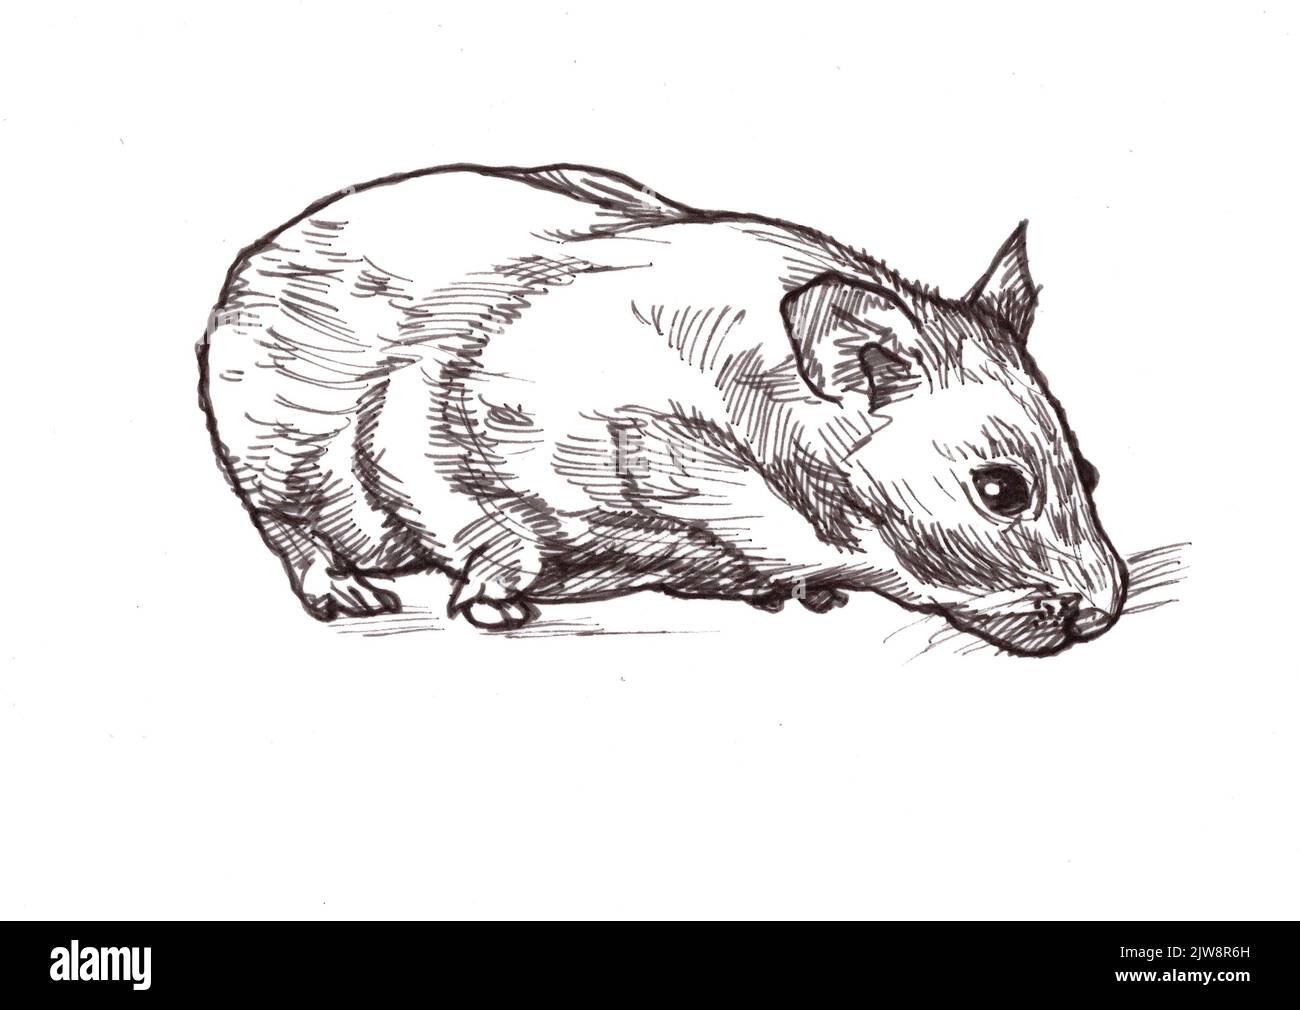 Schwarz-weiße Illustration eines goldenen Hamsters auf weißem Hintergrund. Stockfoto